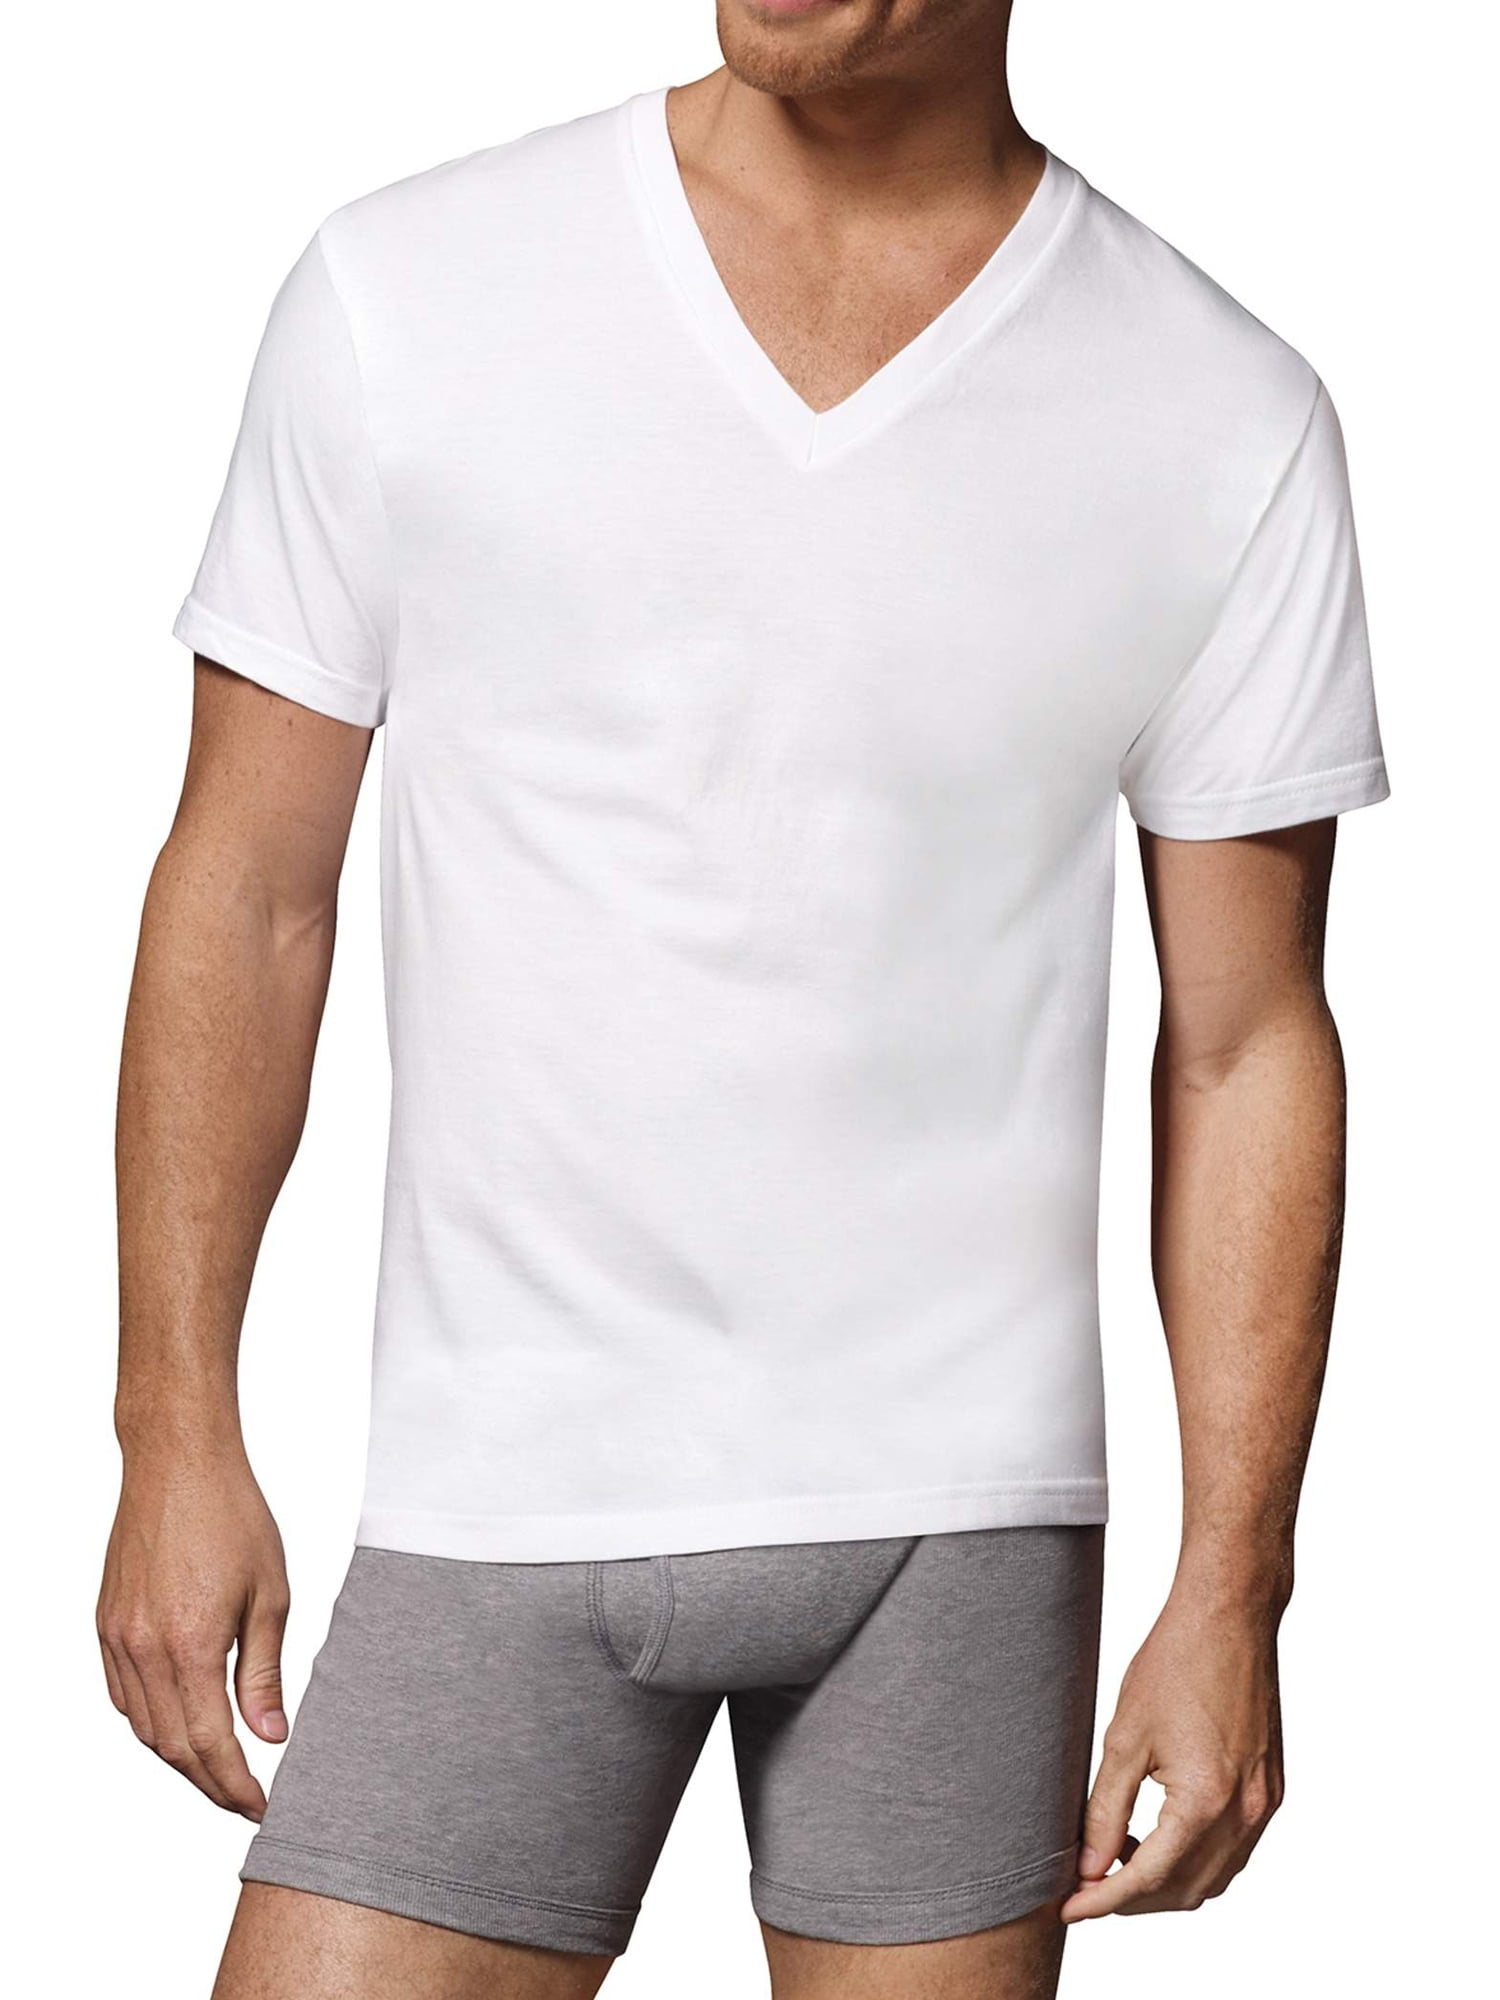 6 Men's Hanes Tagless Cotton V-Neck Tee Shirts Medium 38-40 